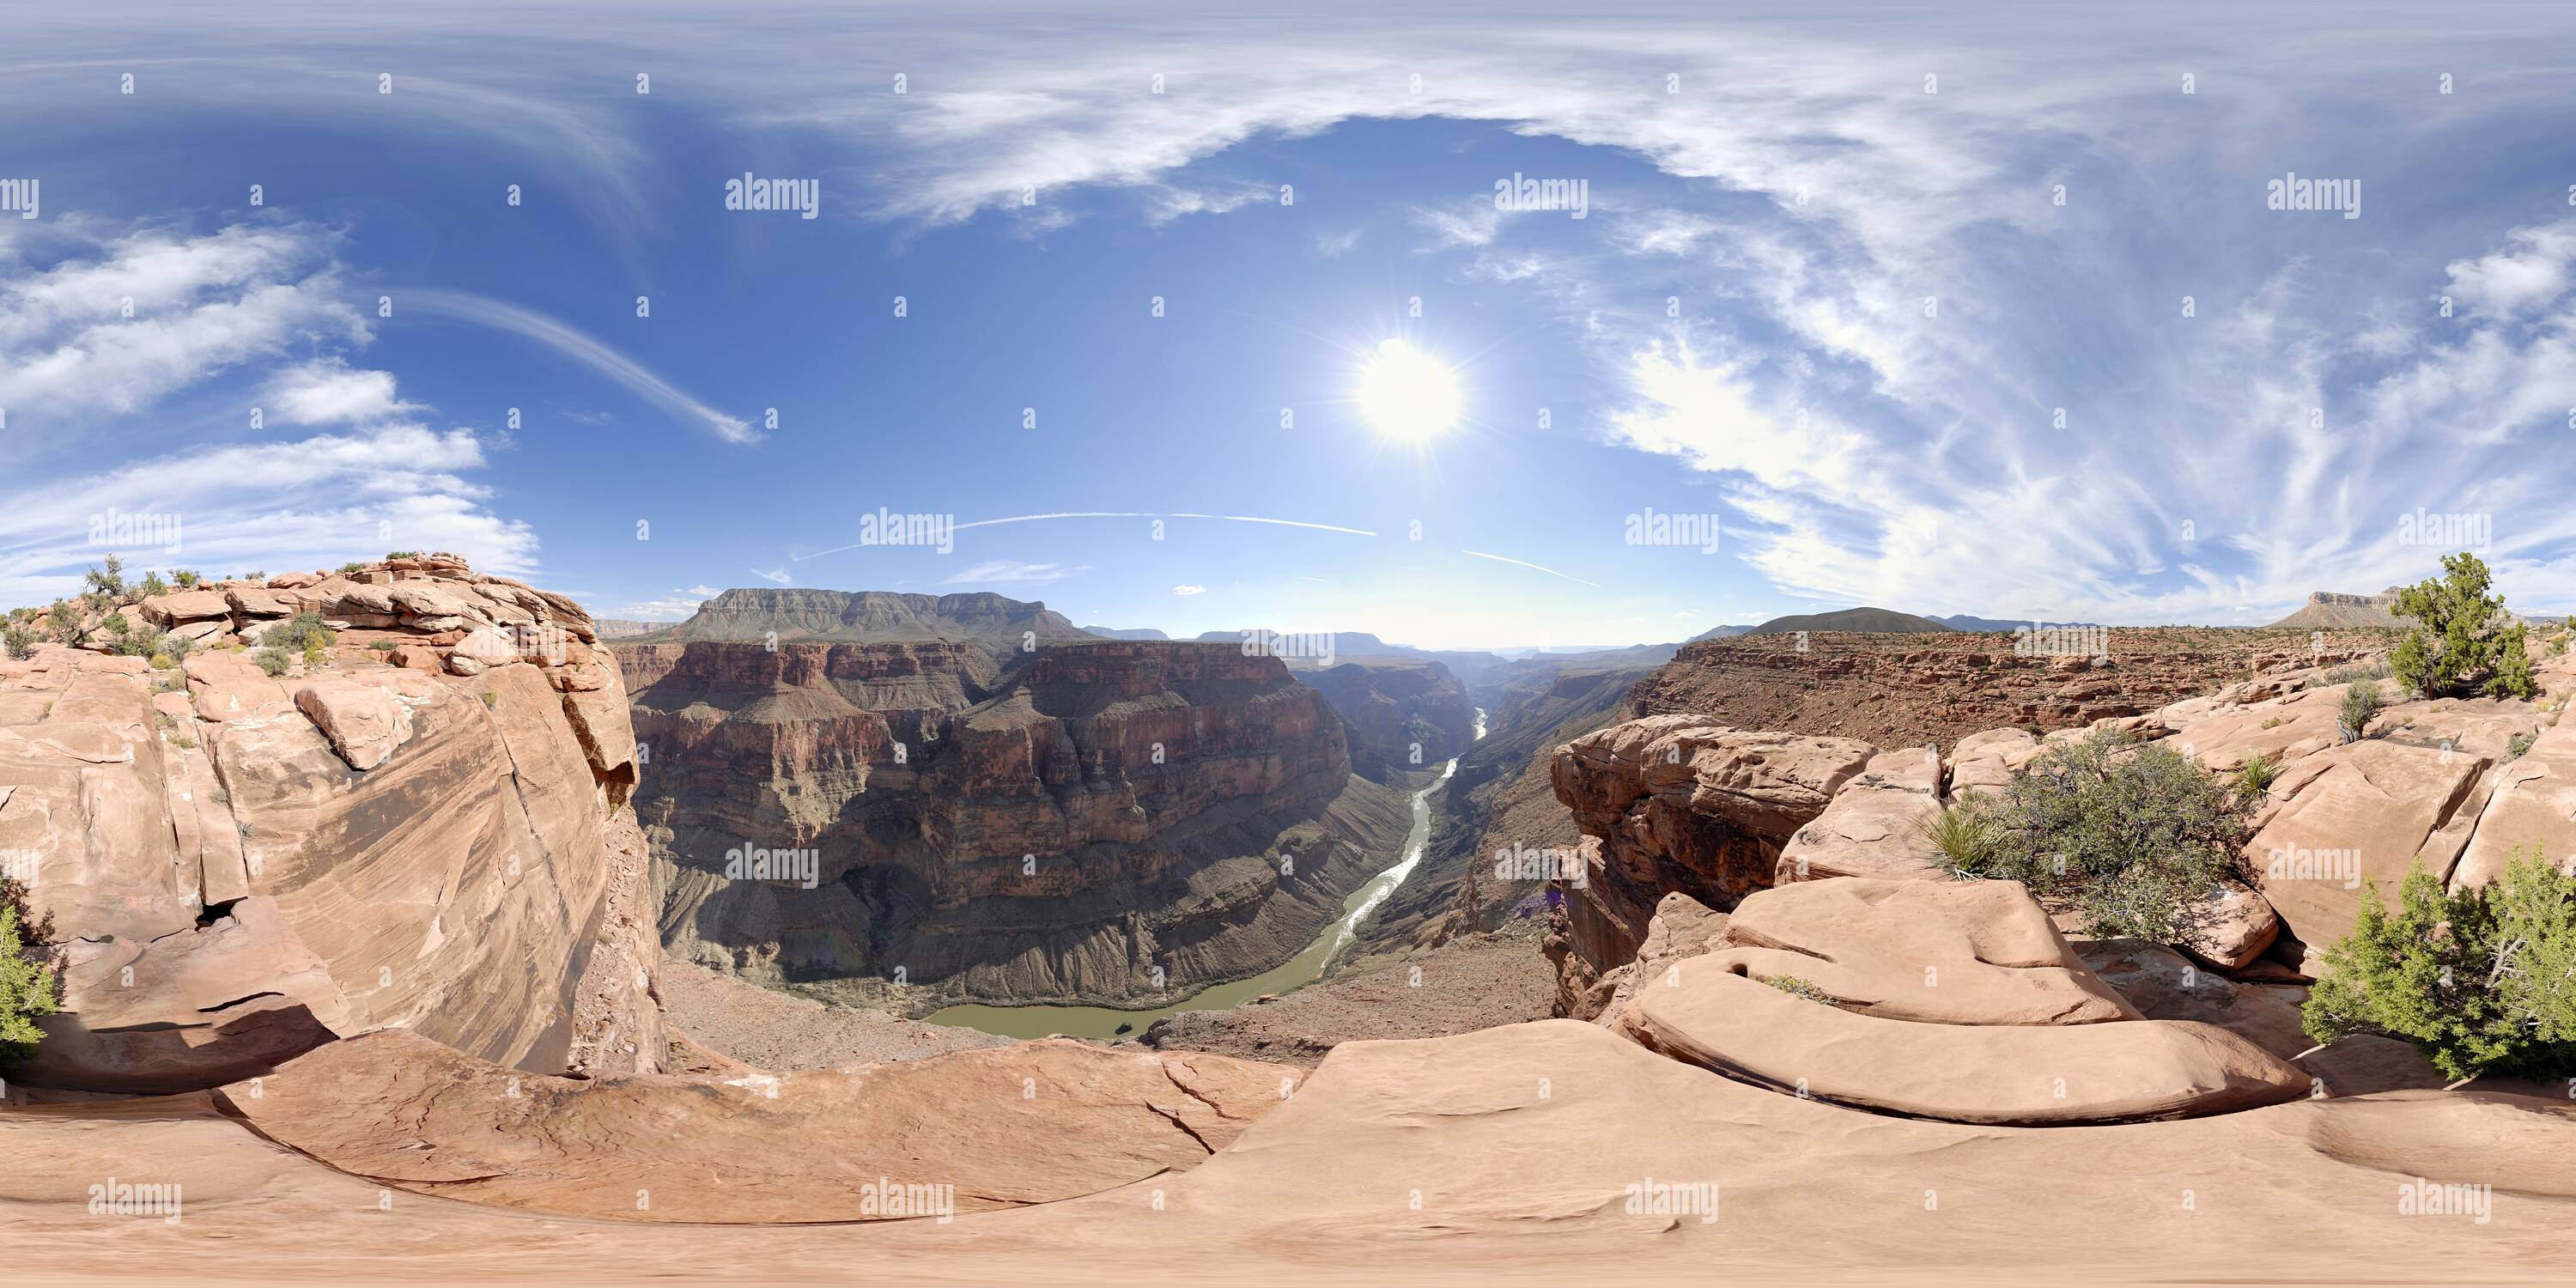 Vue panoramique à 360° de Toroweap donnent sur sur le Grand Canyon North Rim face à l'ouest